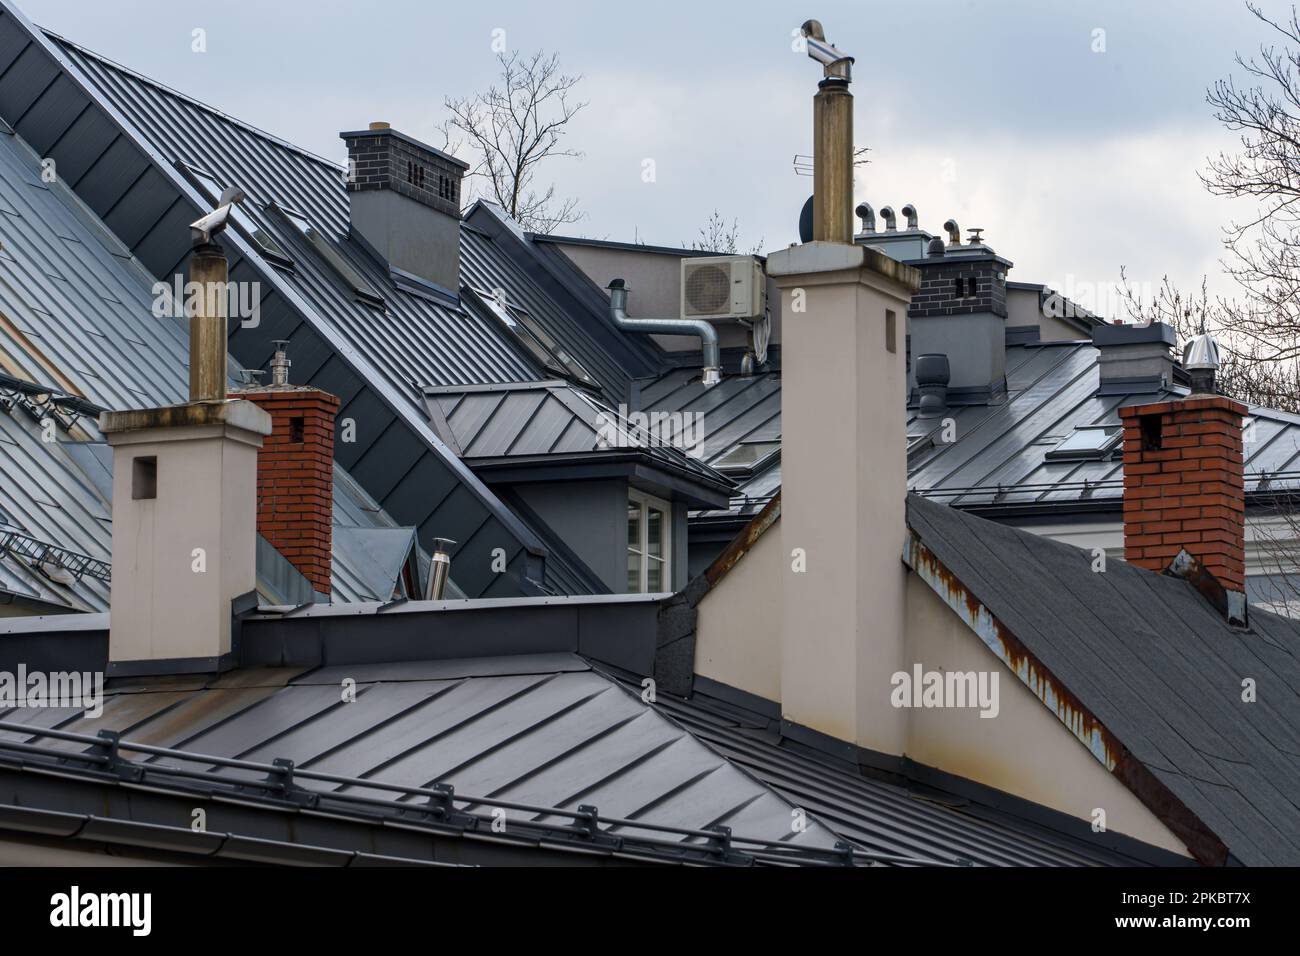 Toits de maisons en ciment recouvertes de tôle, toit en métal gris, cheminées Banque D'Images